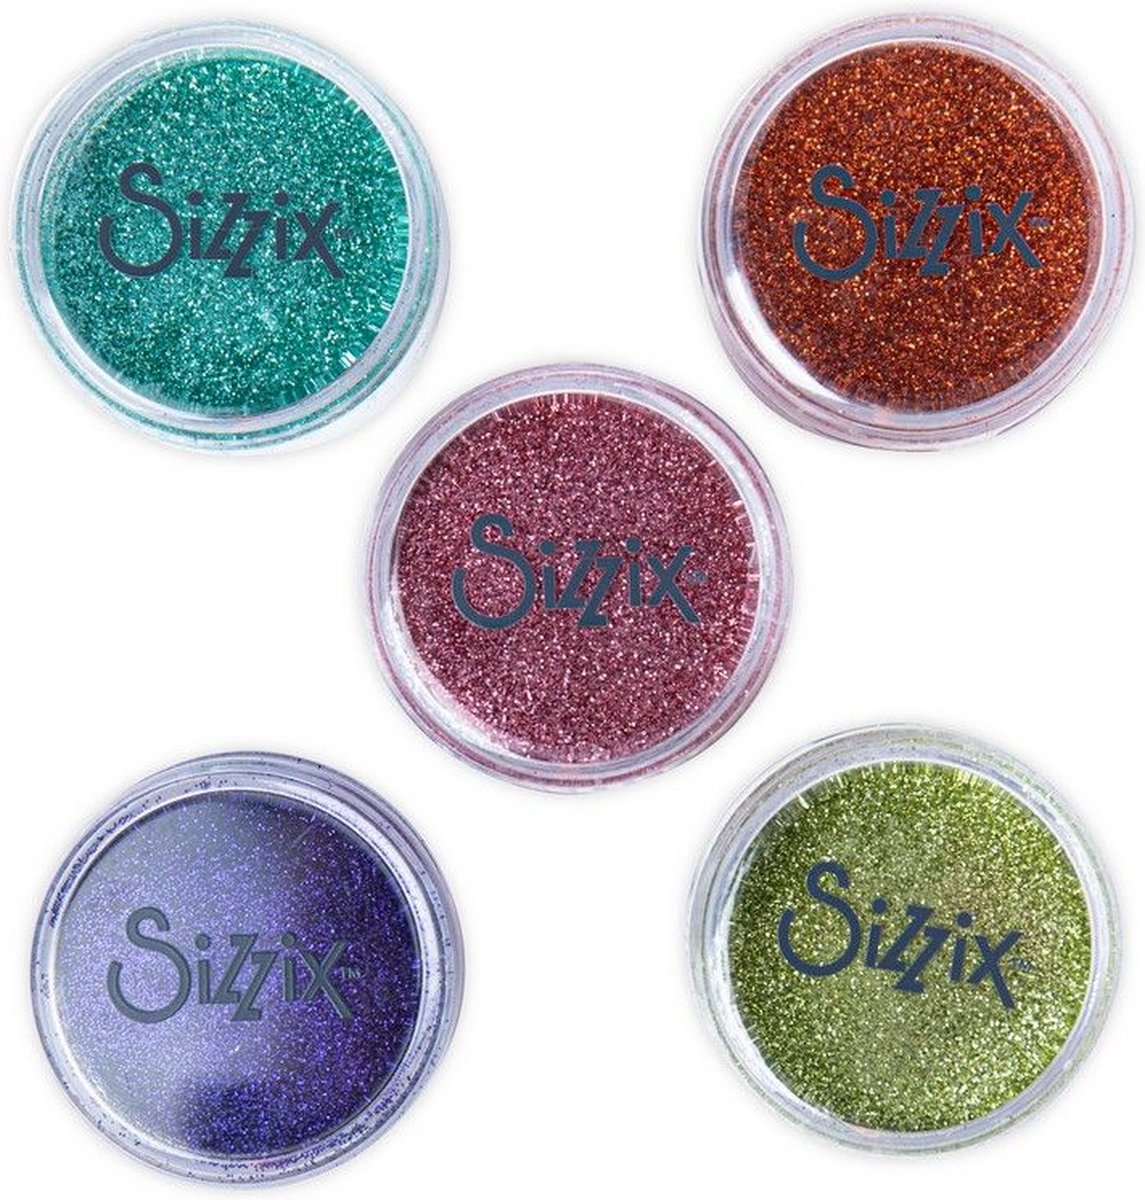 Sizzix Glitter - Fijn - Biologisch afbreekbaar - 20g - Muted